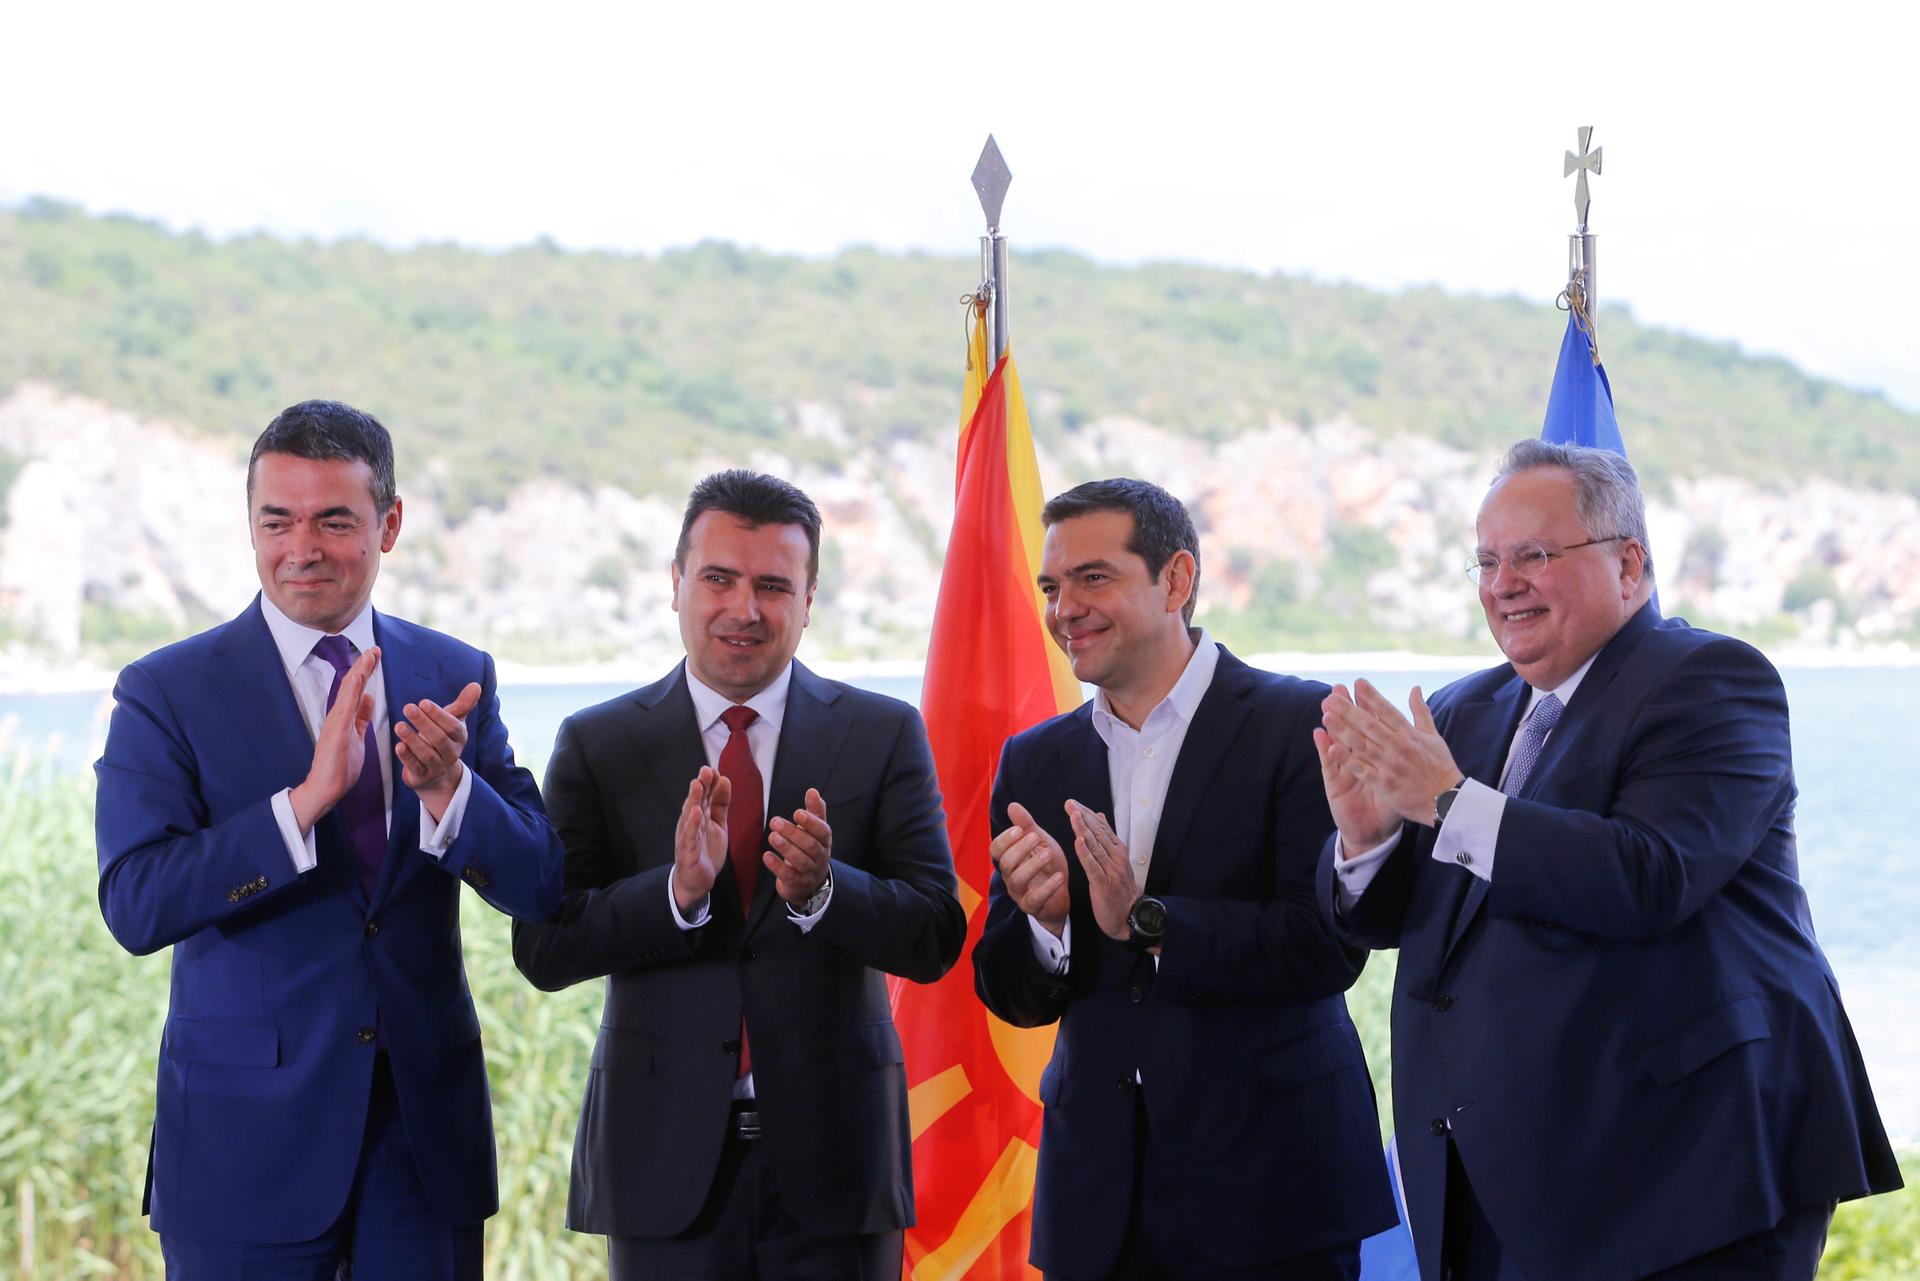 Greek Foreign Minister Nikos Kotzias, his Macedonian counterpart Nikola Dimitrov, Greek Prime Minister Alexis Tsipras and Macedonian Prime Minister Zoran Zaev